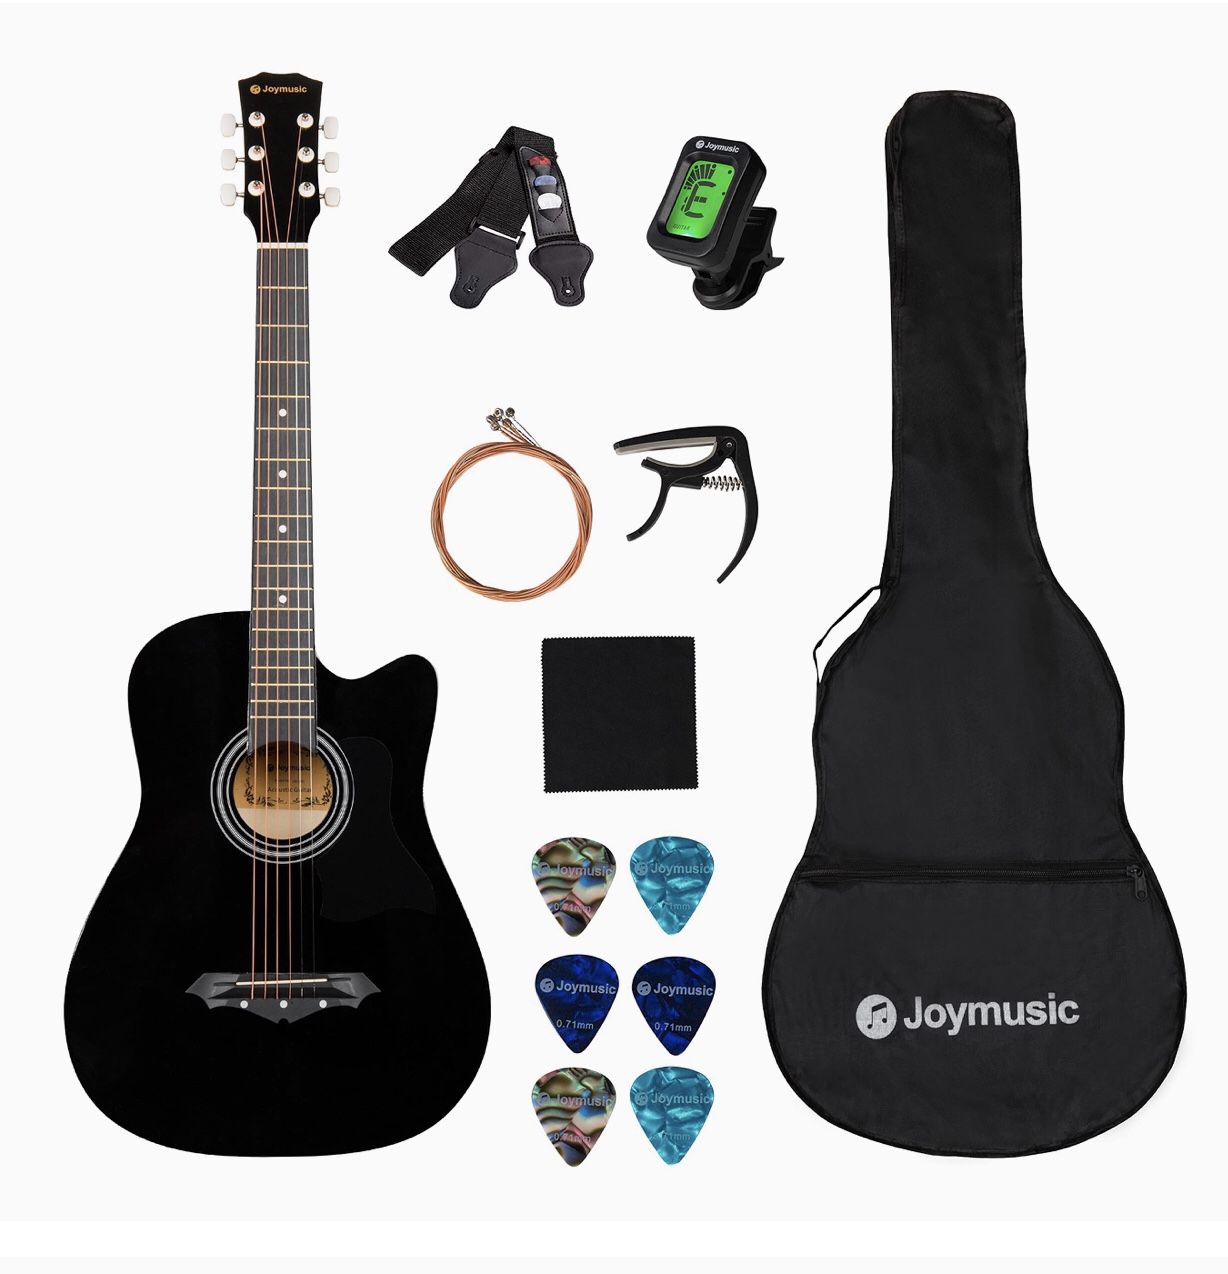 JOYMUSIC 6 String Acoustic Guitar Pack, Right, Black (JG-38C BK)